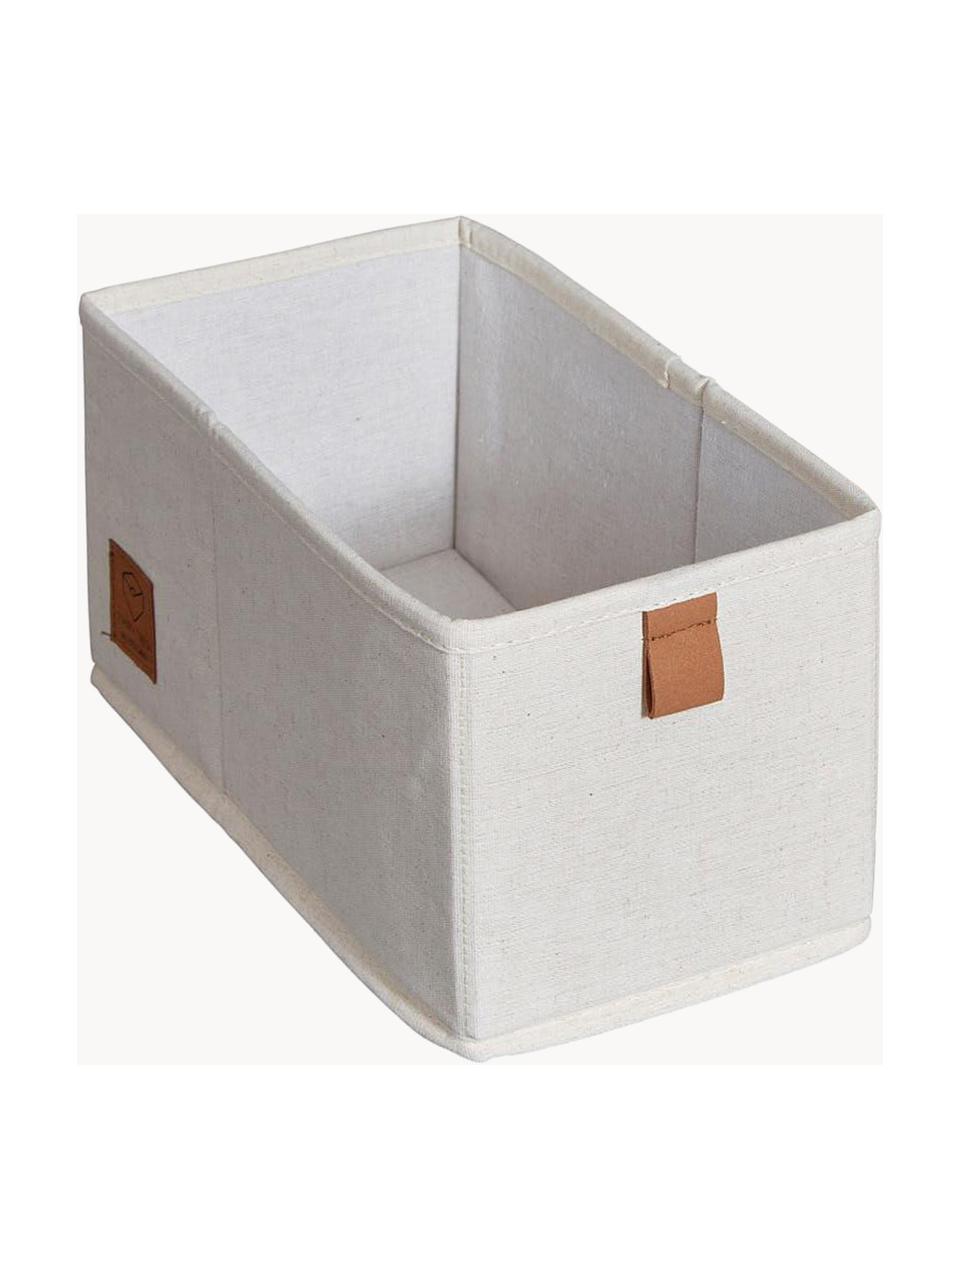 Cajas Premium, 2 uds., Beige claro, marrón, An 15 x F 30 cm